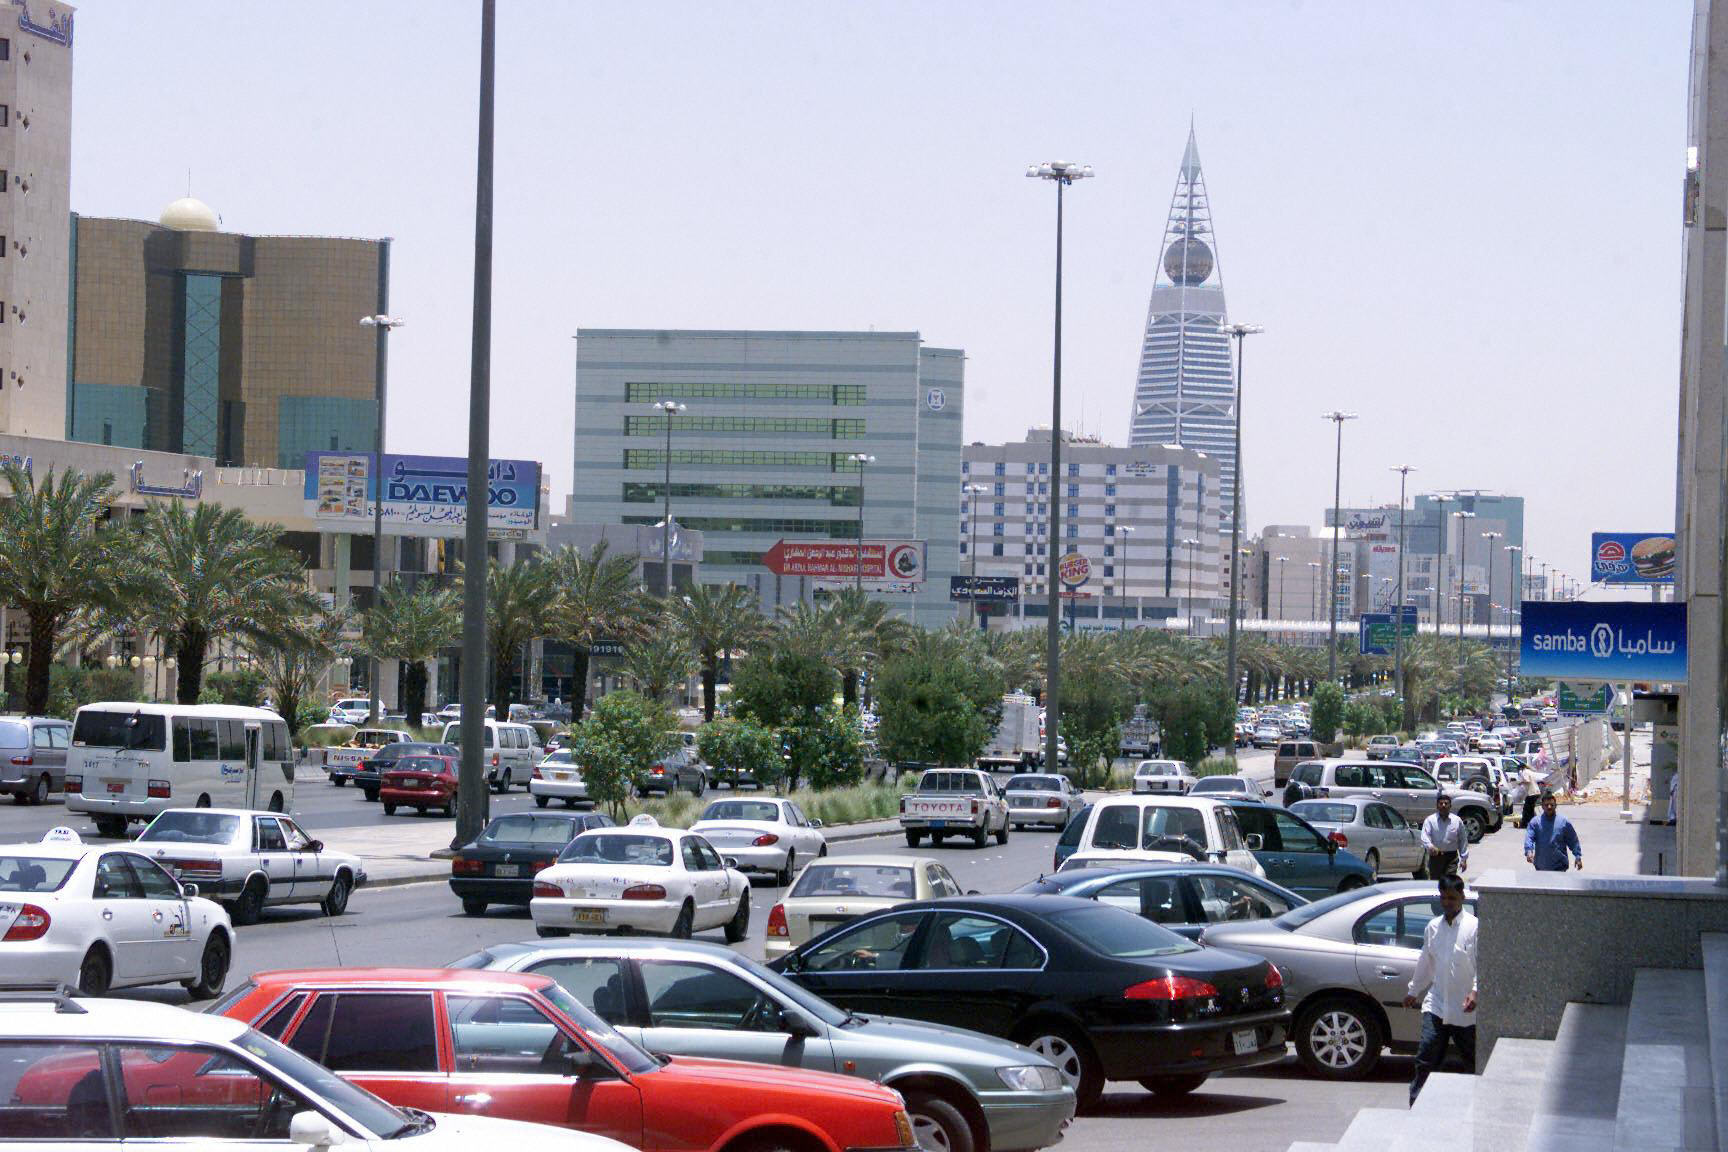 وزارة التجارة السعودية تخالف 4 أشخاص روجوا للكسب السريع غير المشروع